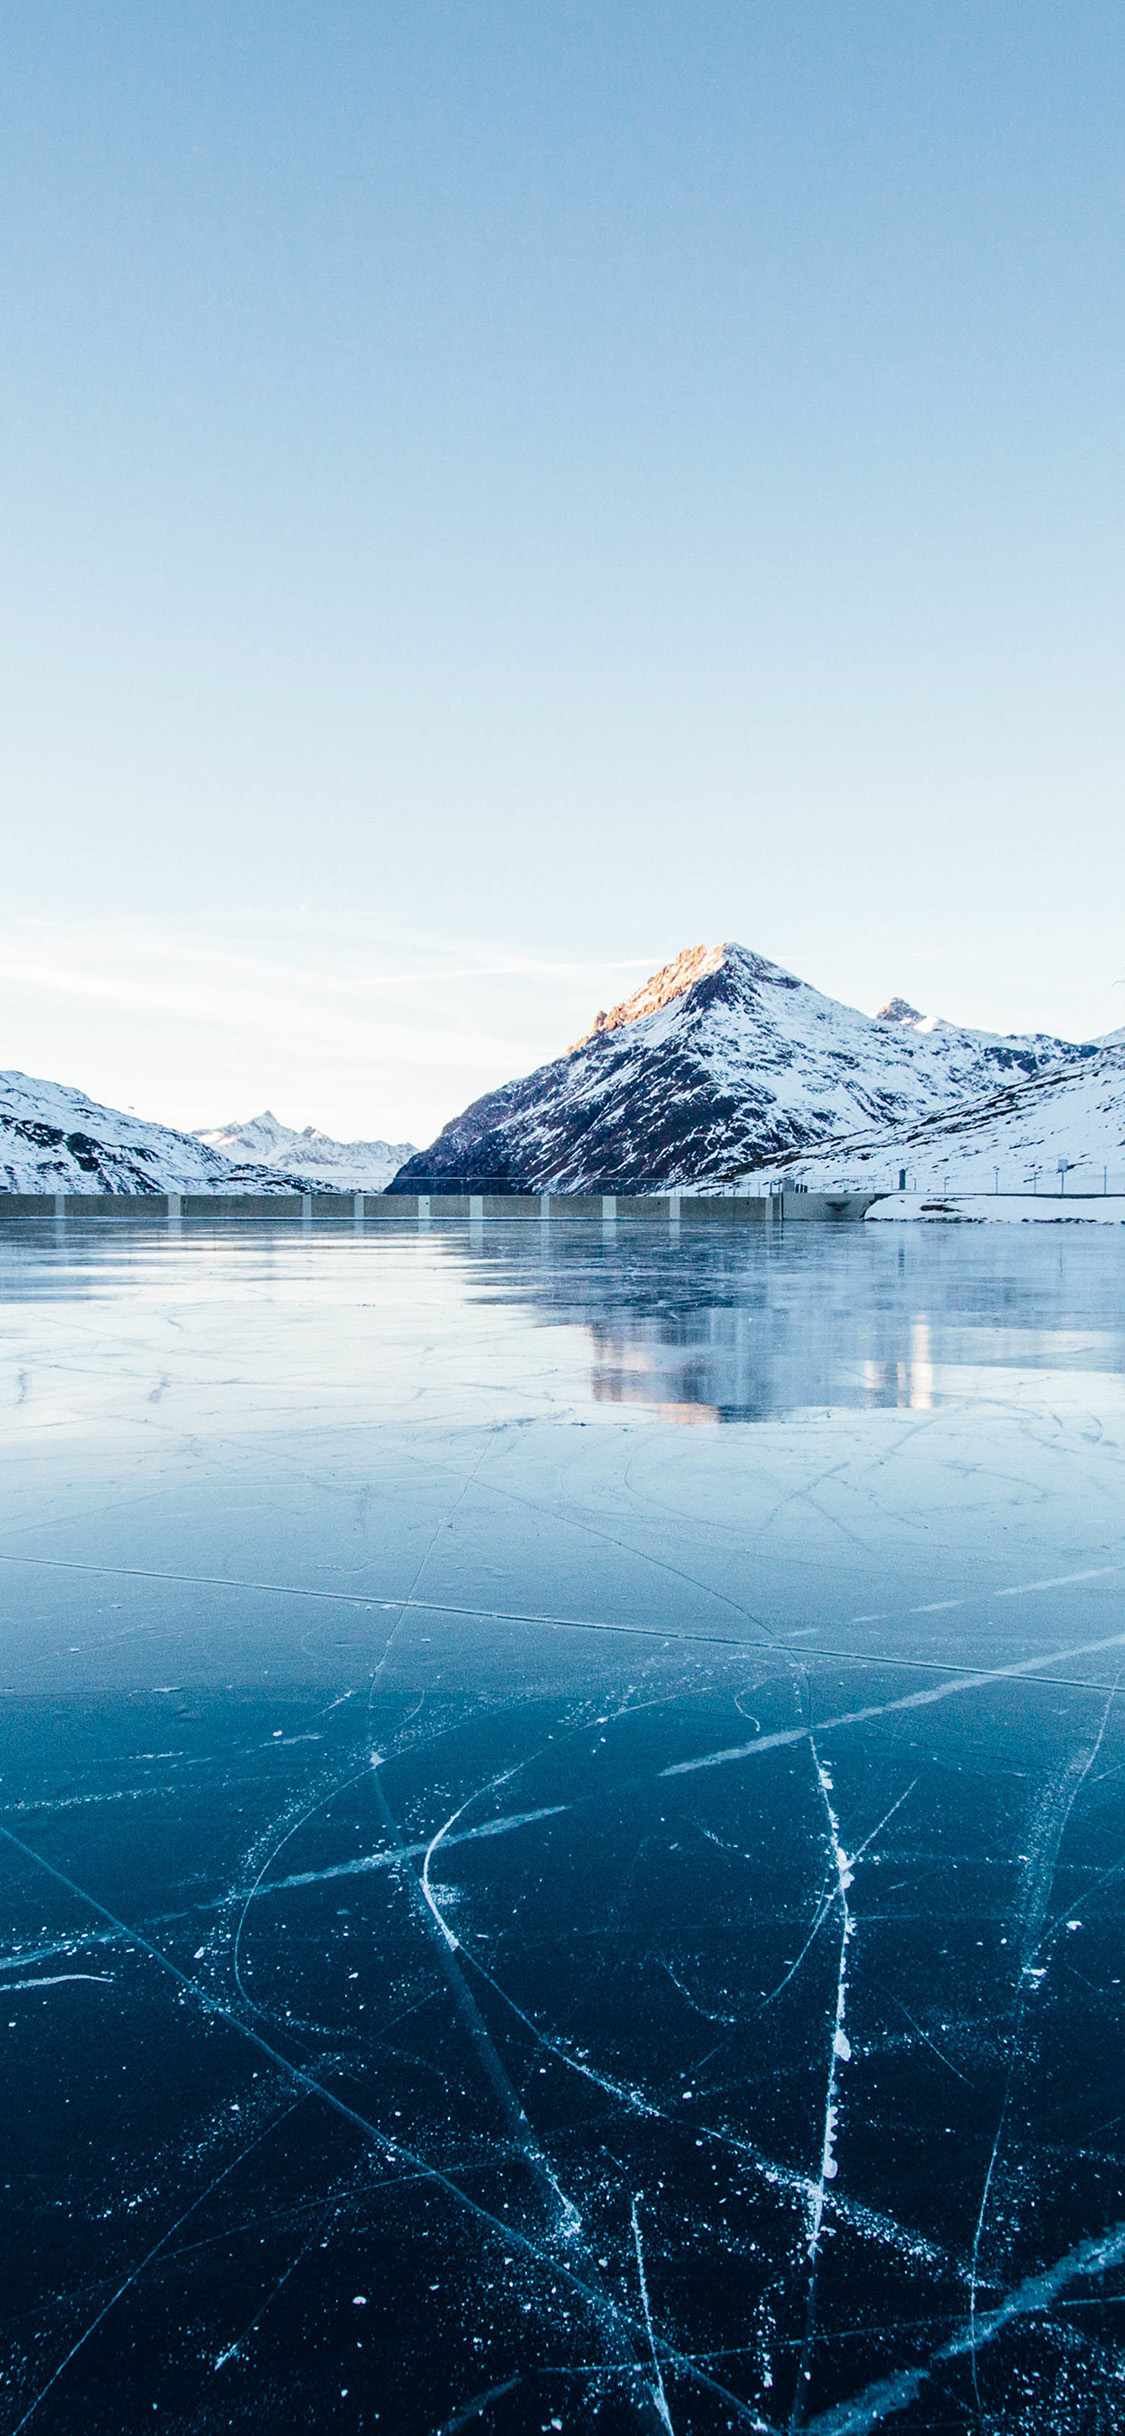 冰河唯美高清图片集 结冰的河面图片大全→MAIGOO图库